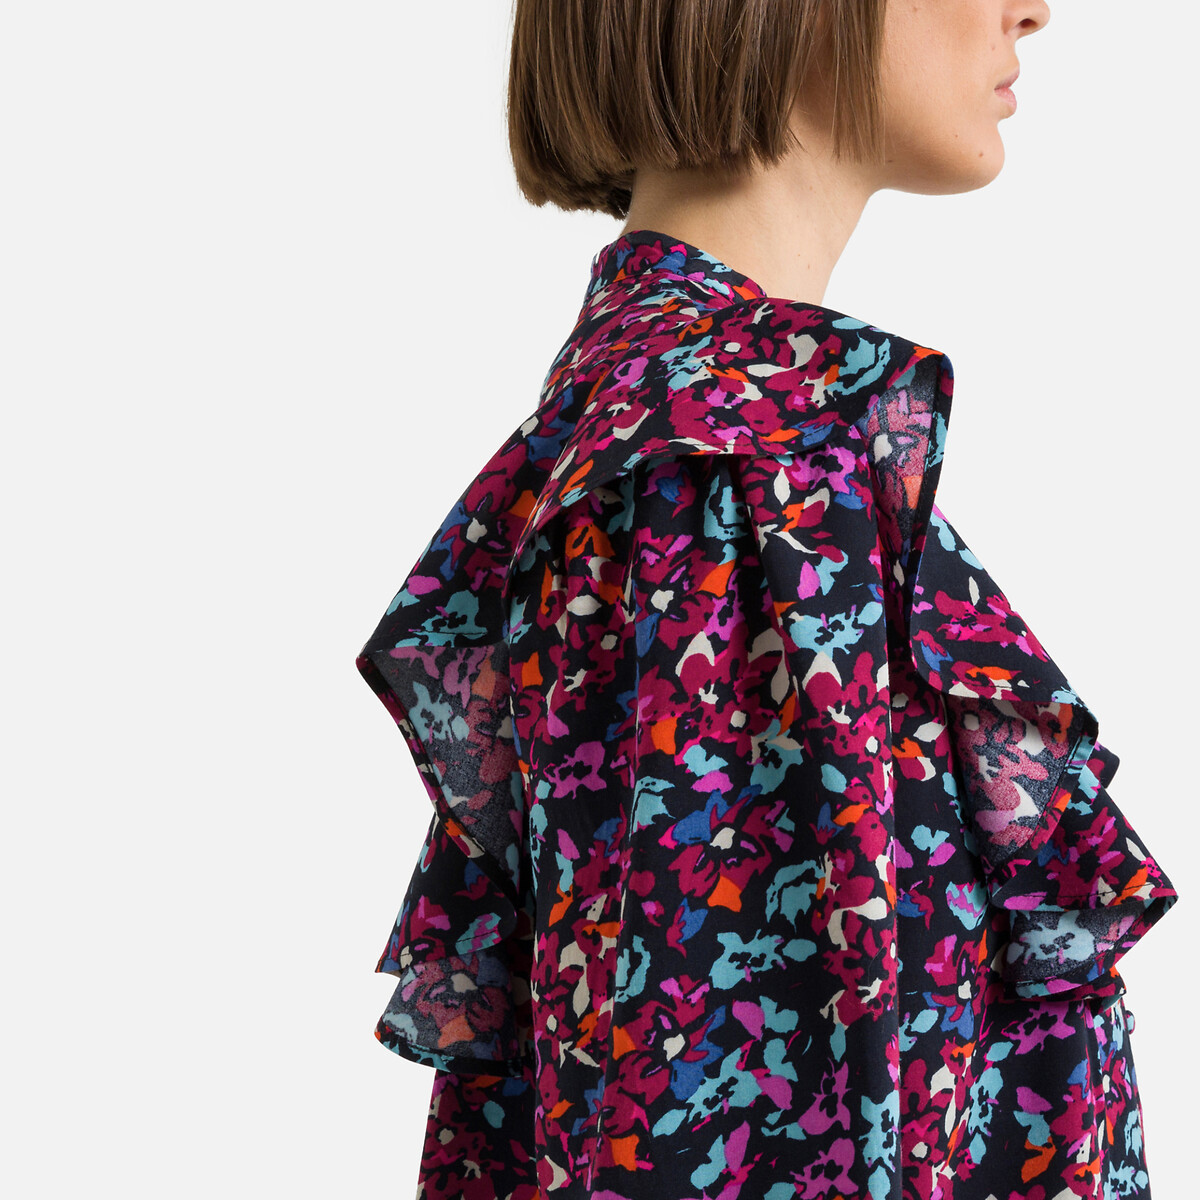 Платье С воротником-стойкой длинные рукава цветочный принт S разноцветный LaRedoute, размер S - фото 3